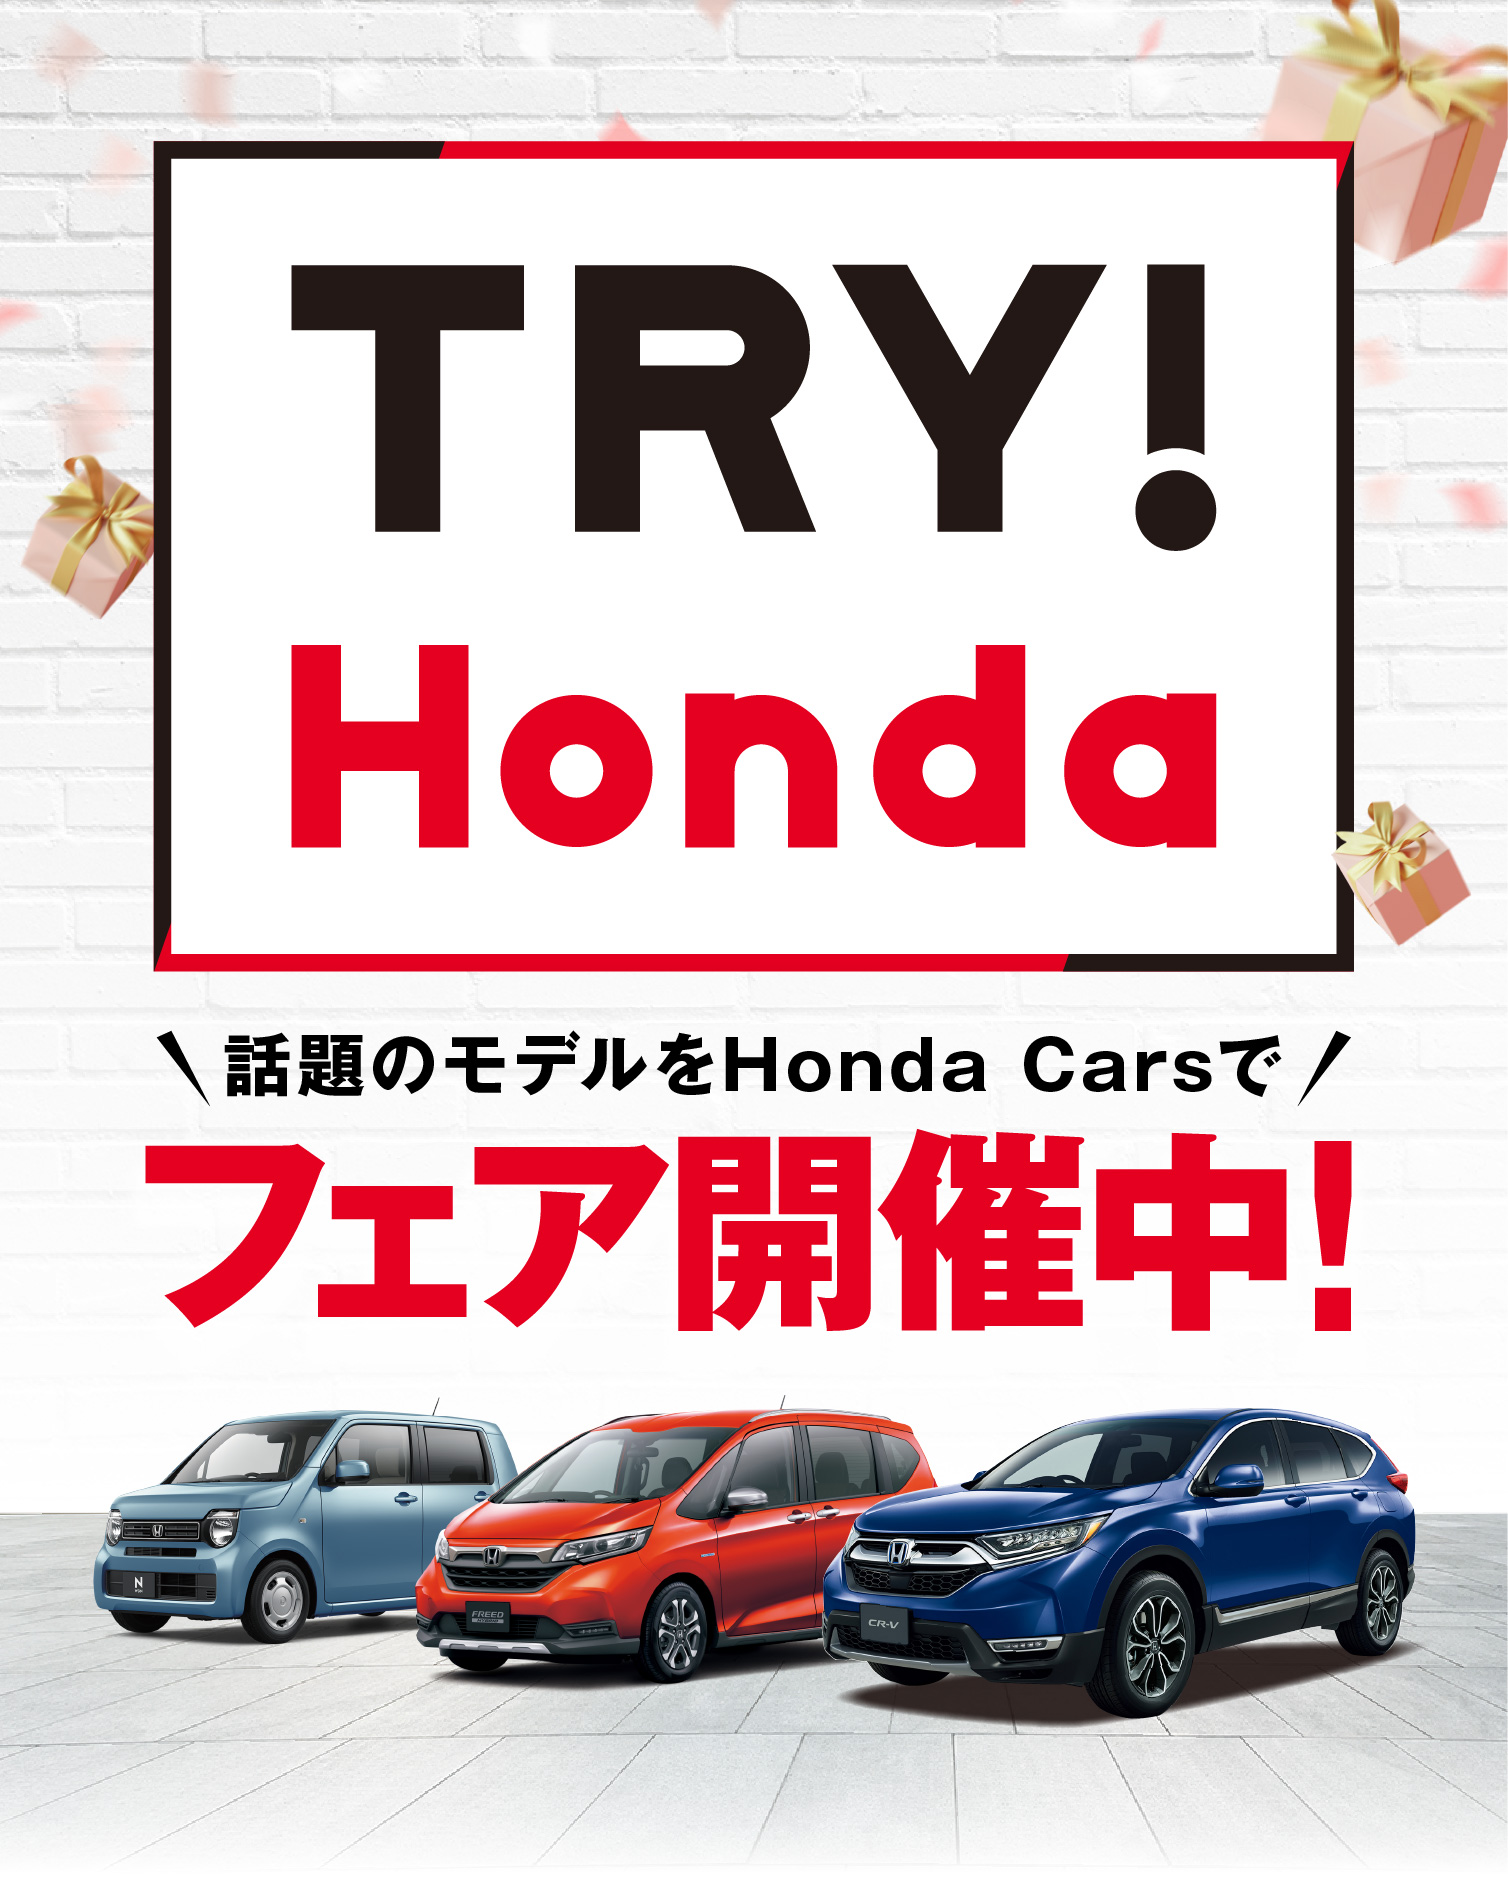 TRY!Hondaフェア開催